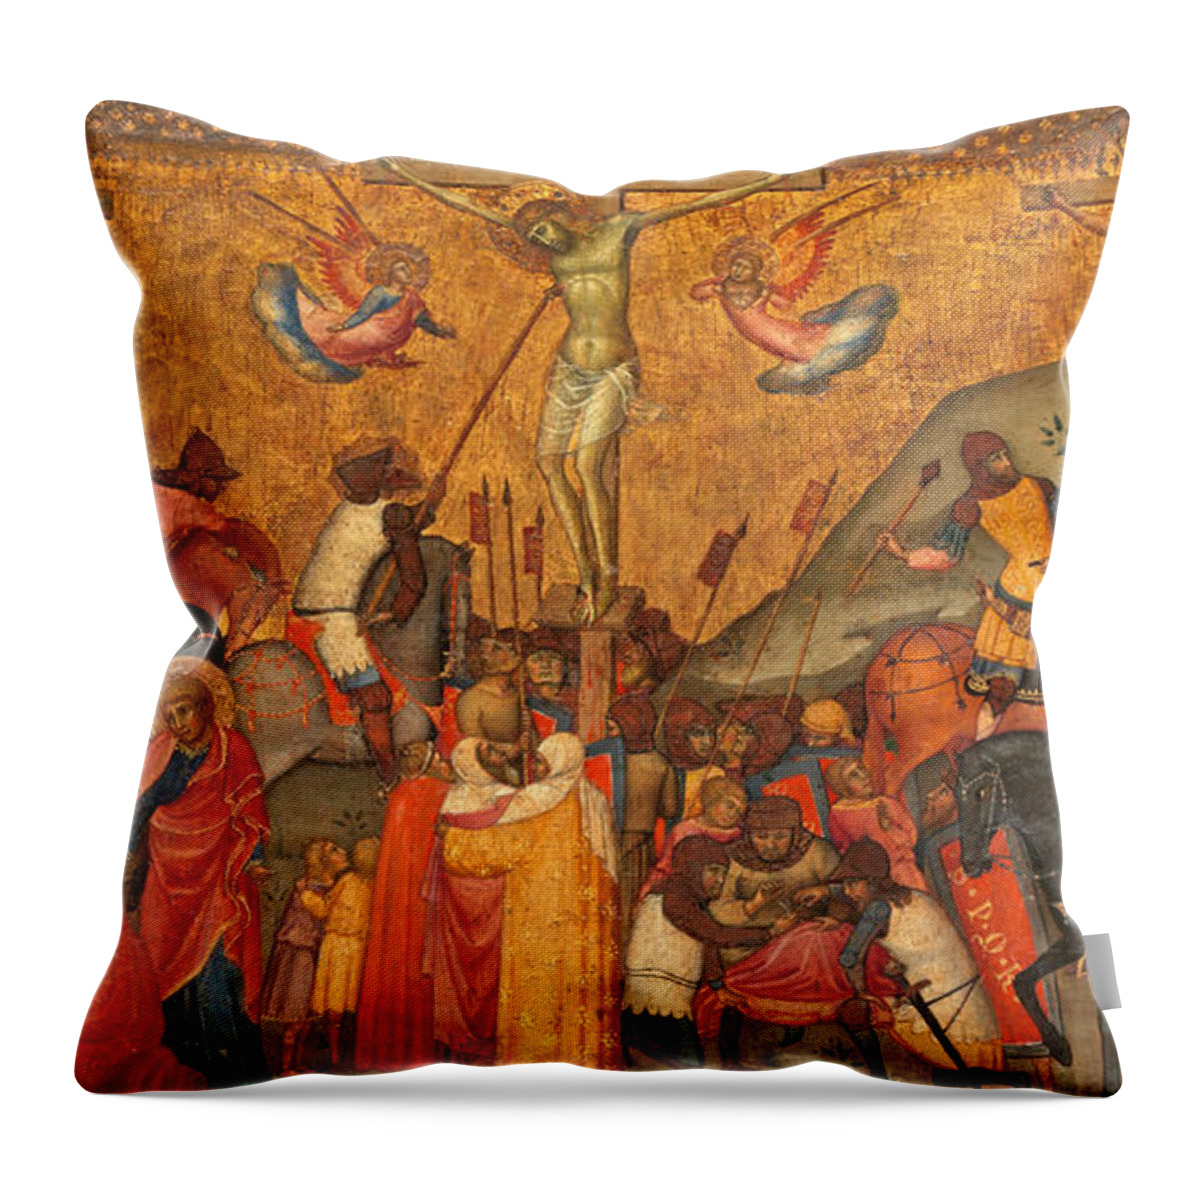 Andrea Di Bartolo Throw Pillow featuring the painting The Crucifixion by Andrea di Bartolo